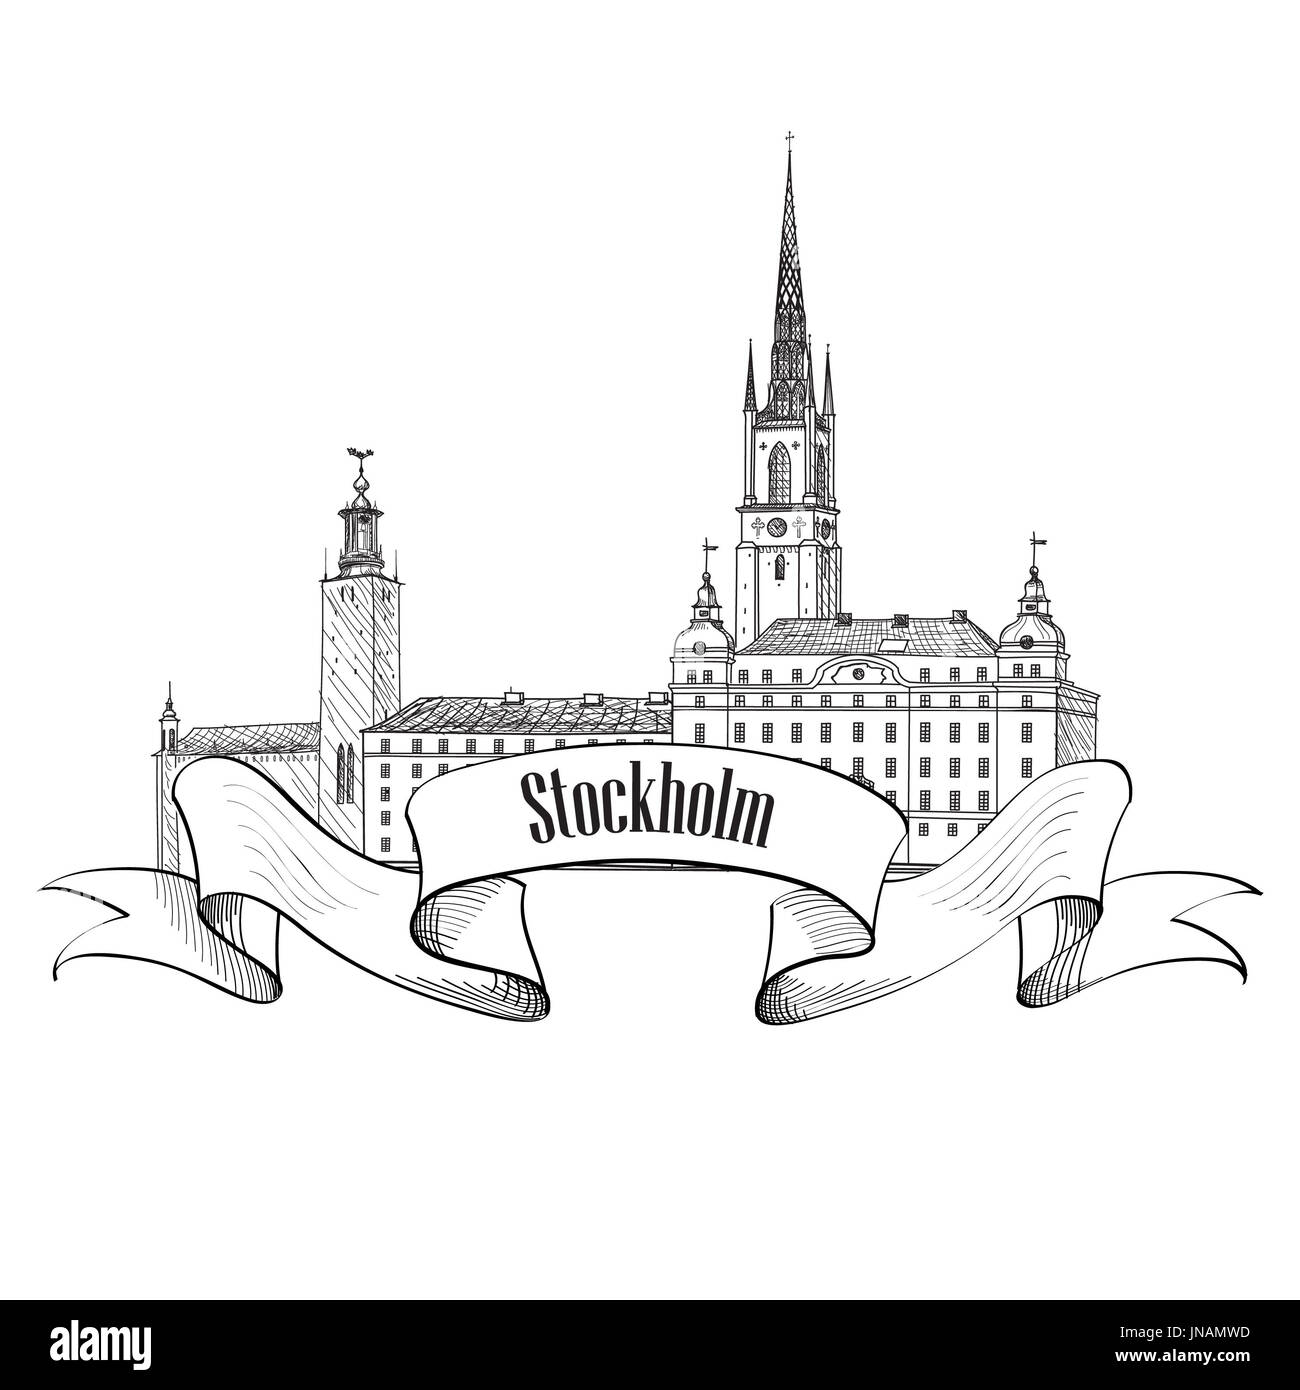 Étiquette de Stockholm Suède voyage. isolé. symbole de l'architecture de la vieille ville de Stockholm skyline détaillées. vector illustration magnifique immeuble.fstf Banque D'Images